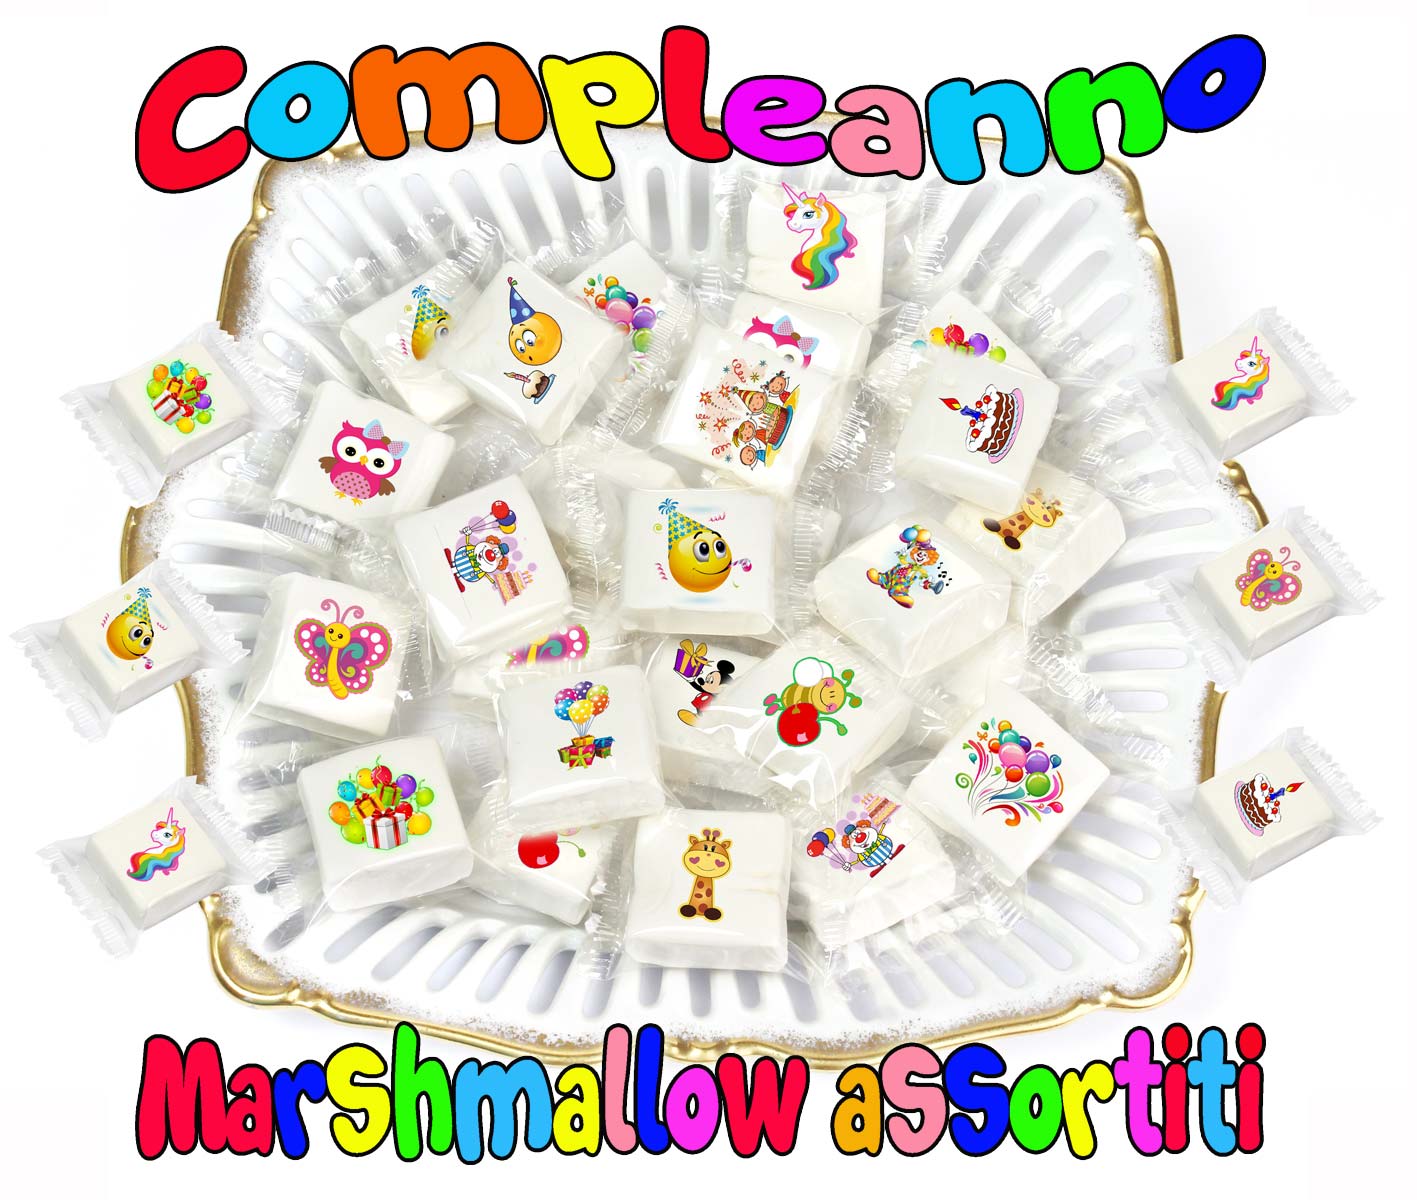 Marshmallow compleanno assortito, allegro e goloso per bambini, tante  immagini divertenti con i personaggi amati dai bambini.